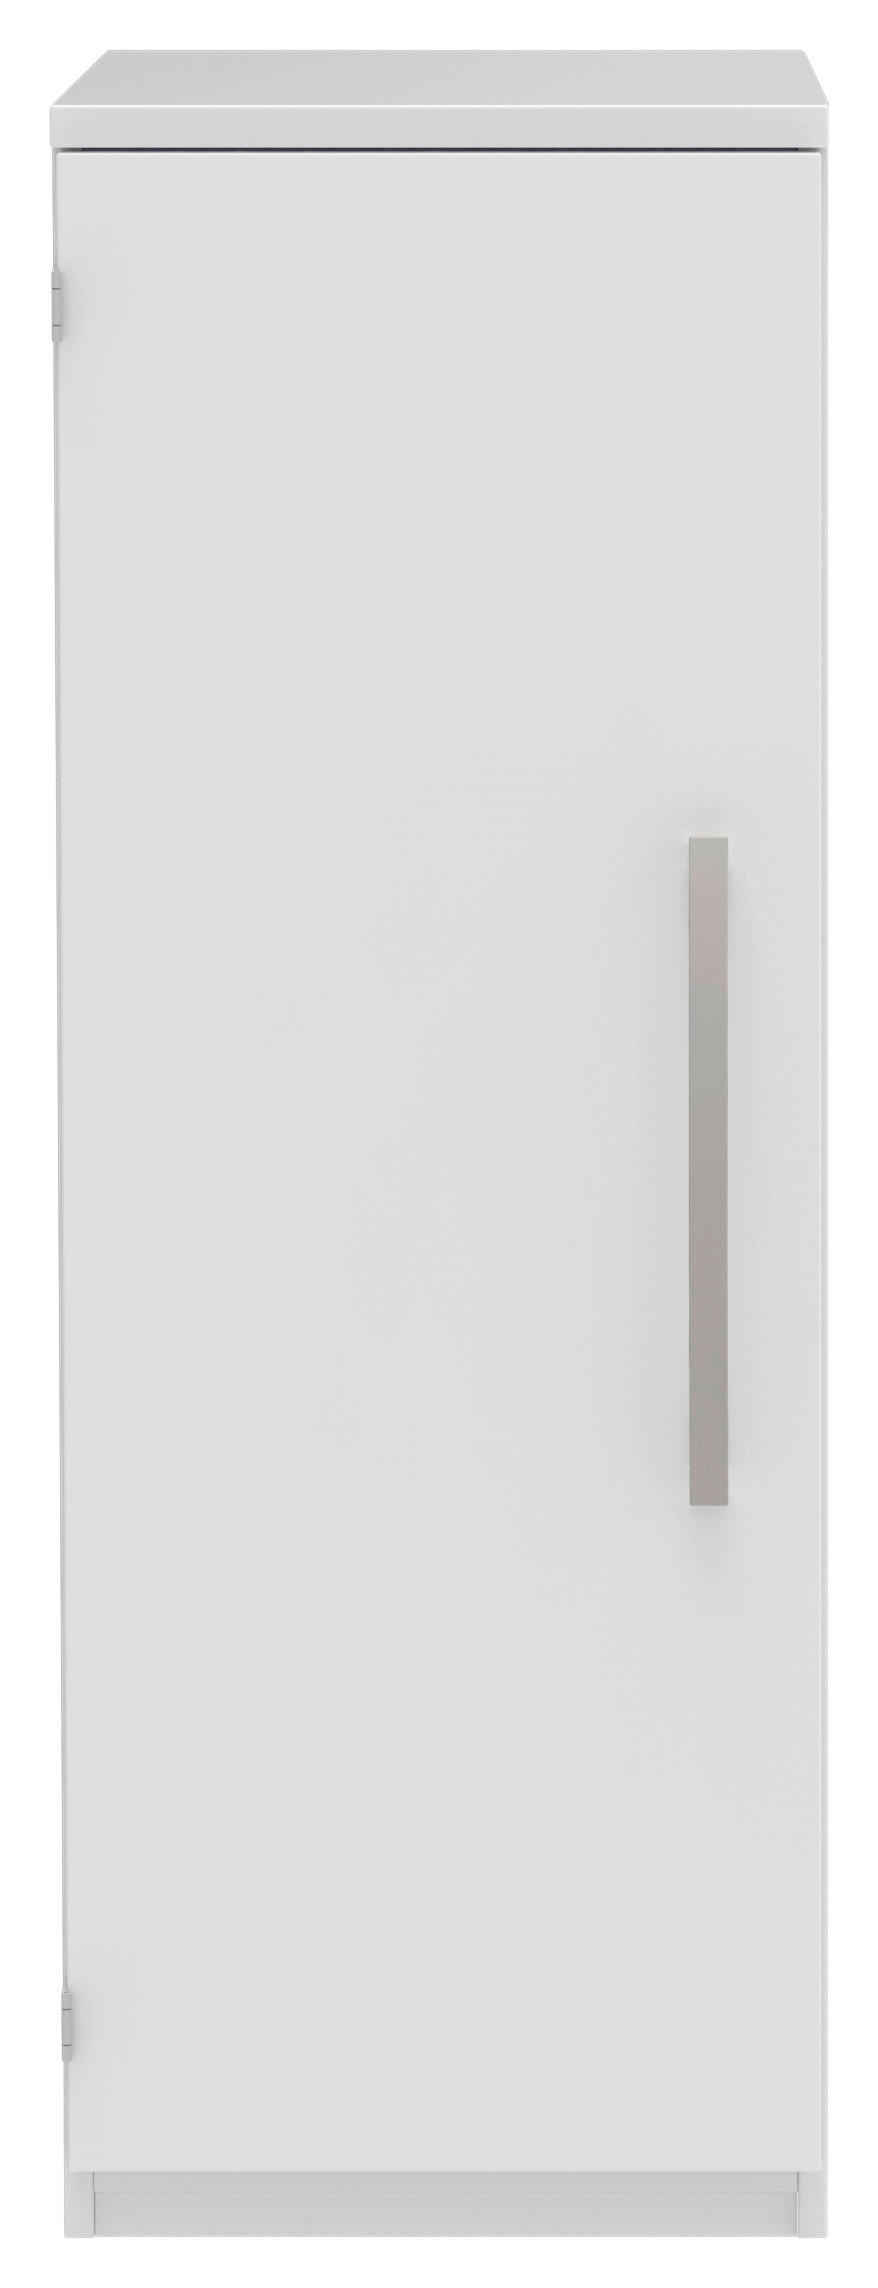 AKTENSCHRANK Weiß  - Weiß, KONVENTIONELL, Holzwerkstoff (40/111,7/43cm) - Moderano